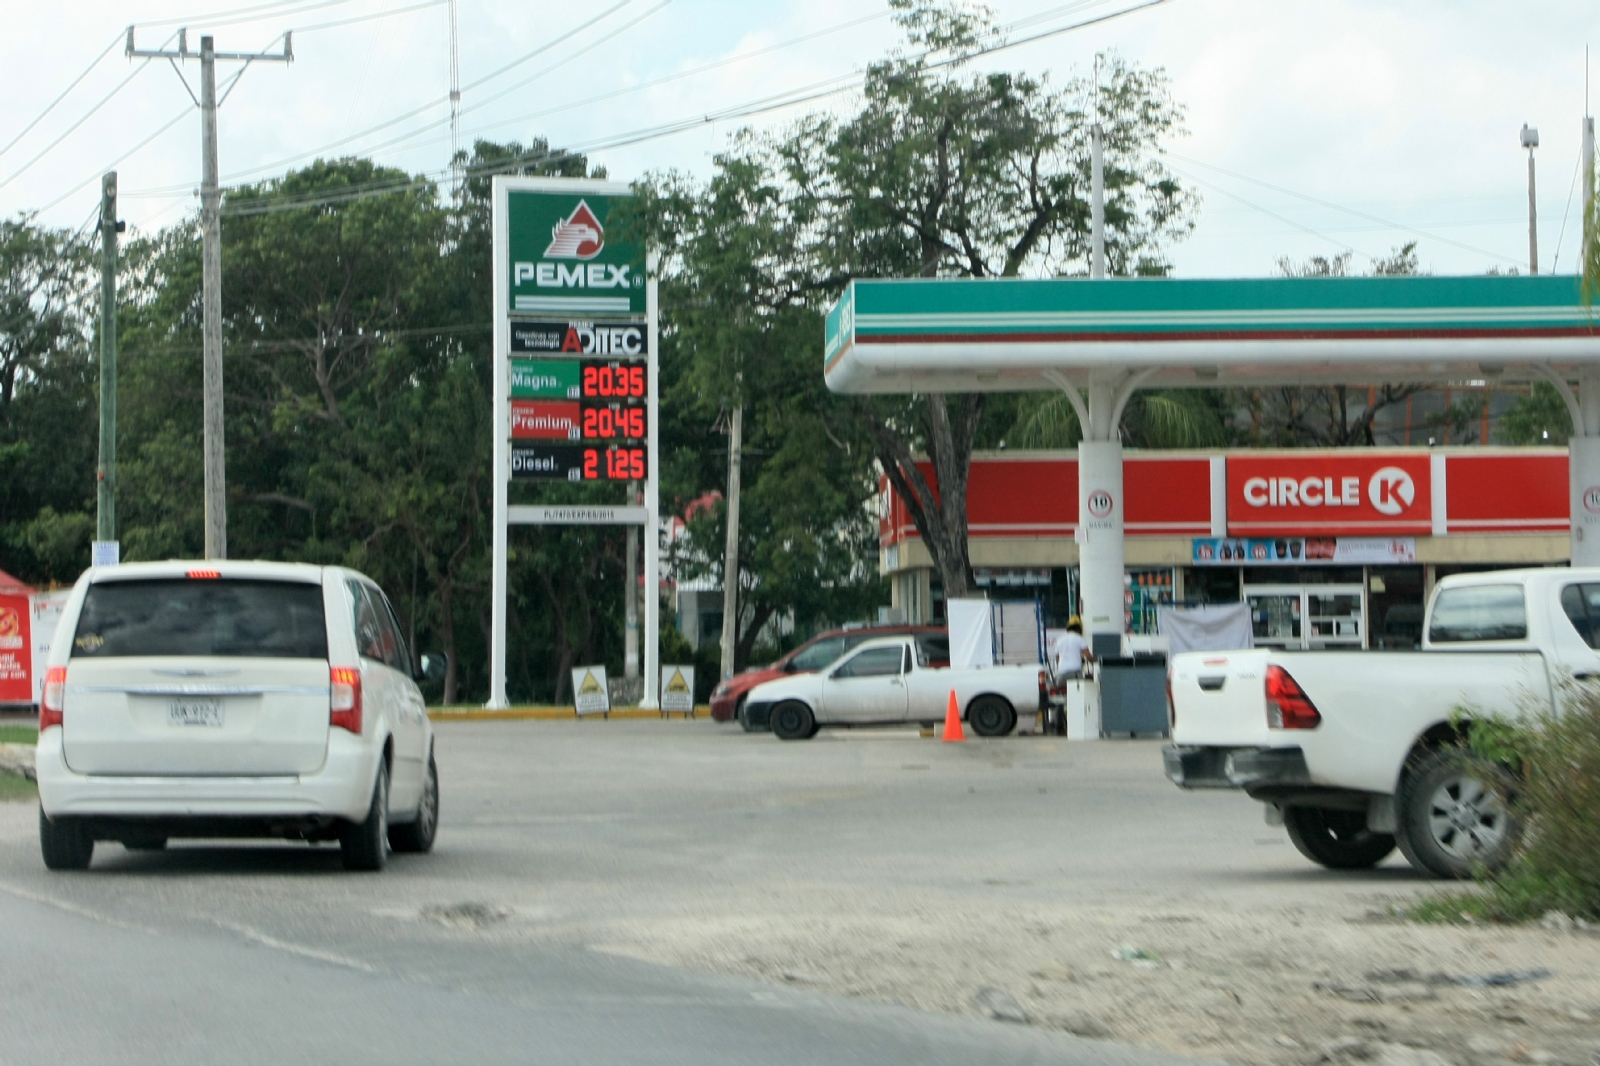 La gasolinera en Cancún que vende la gasolina premium más cara, se localiza cerca del aeropuerto internacional der la ciudad